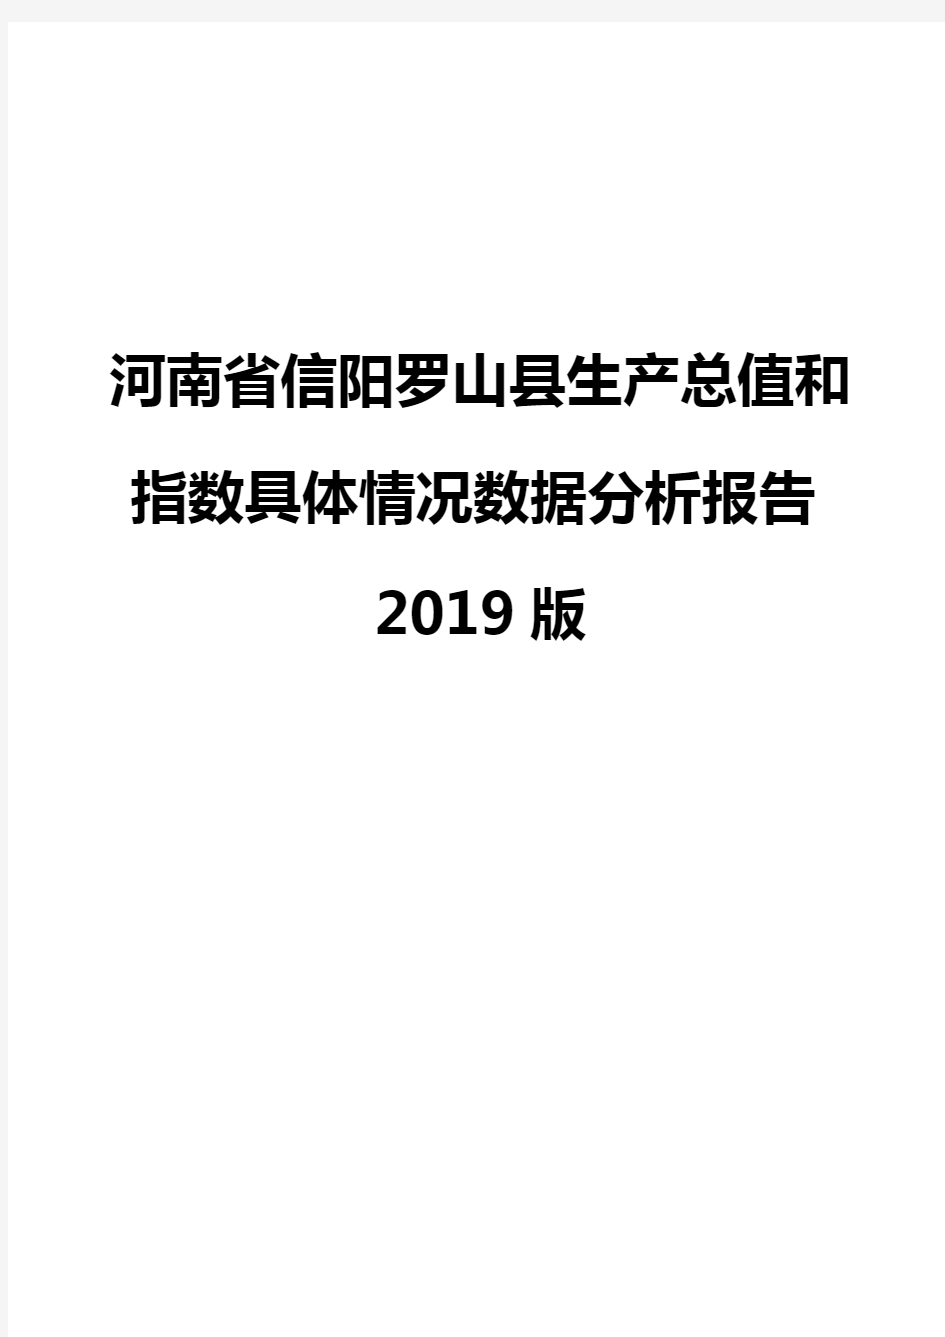 河南省信阳罗山县生产总值和指数具体情况数据分析报告2019版